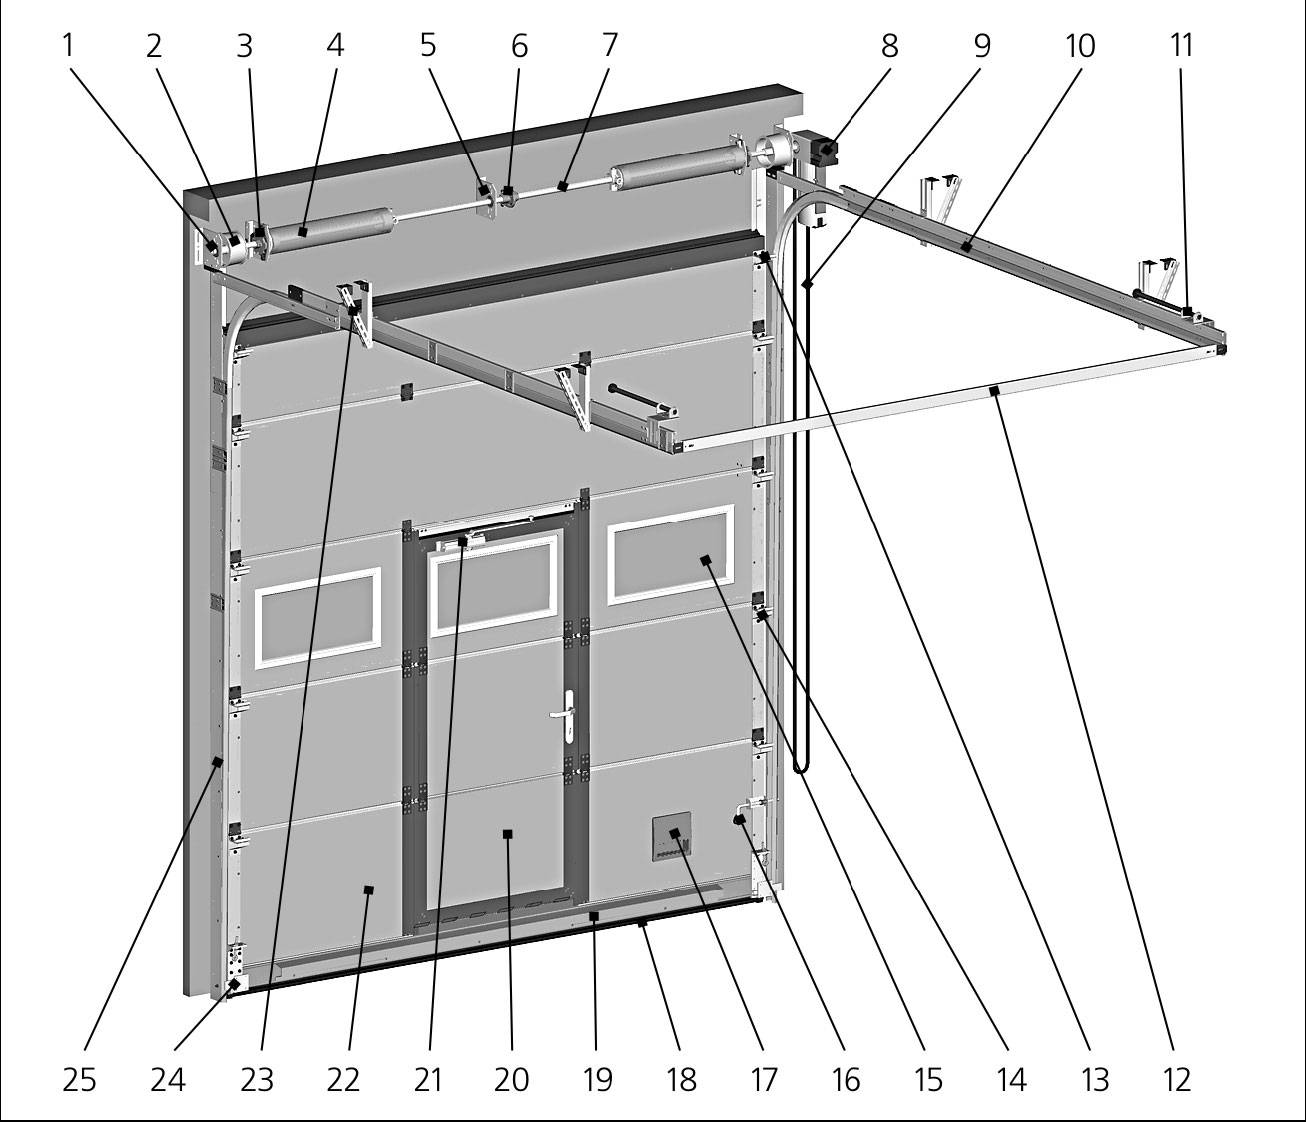 Секционные ворота: виды и размеры конструкций для гаража, как выбрать